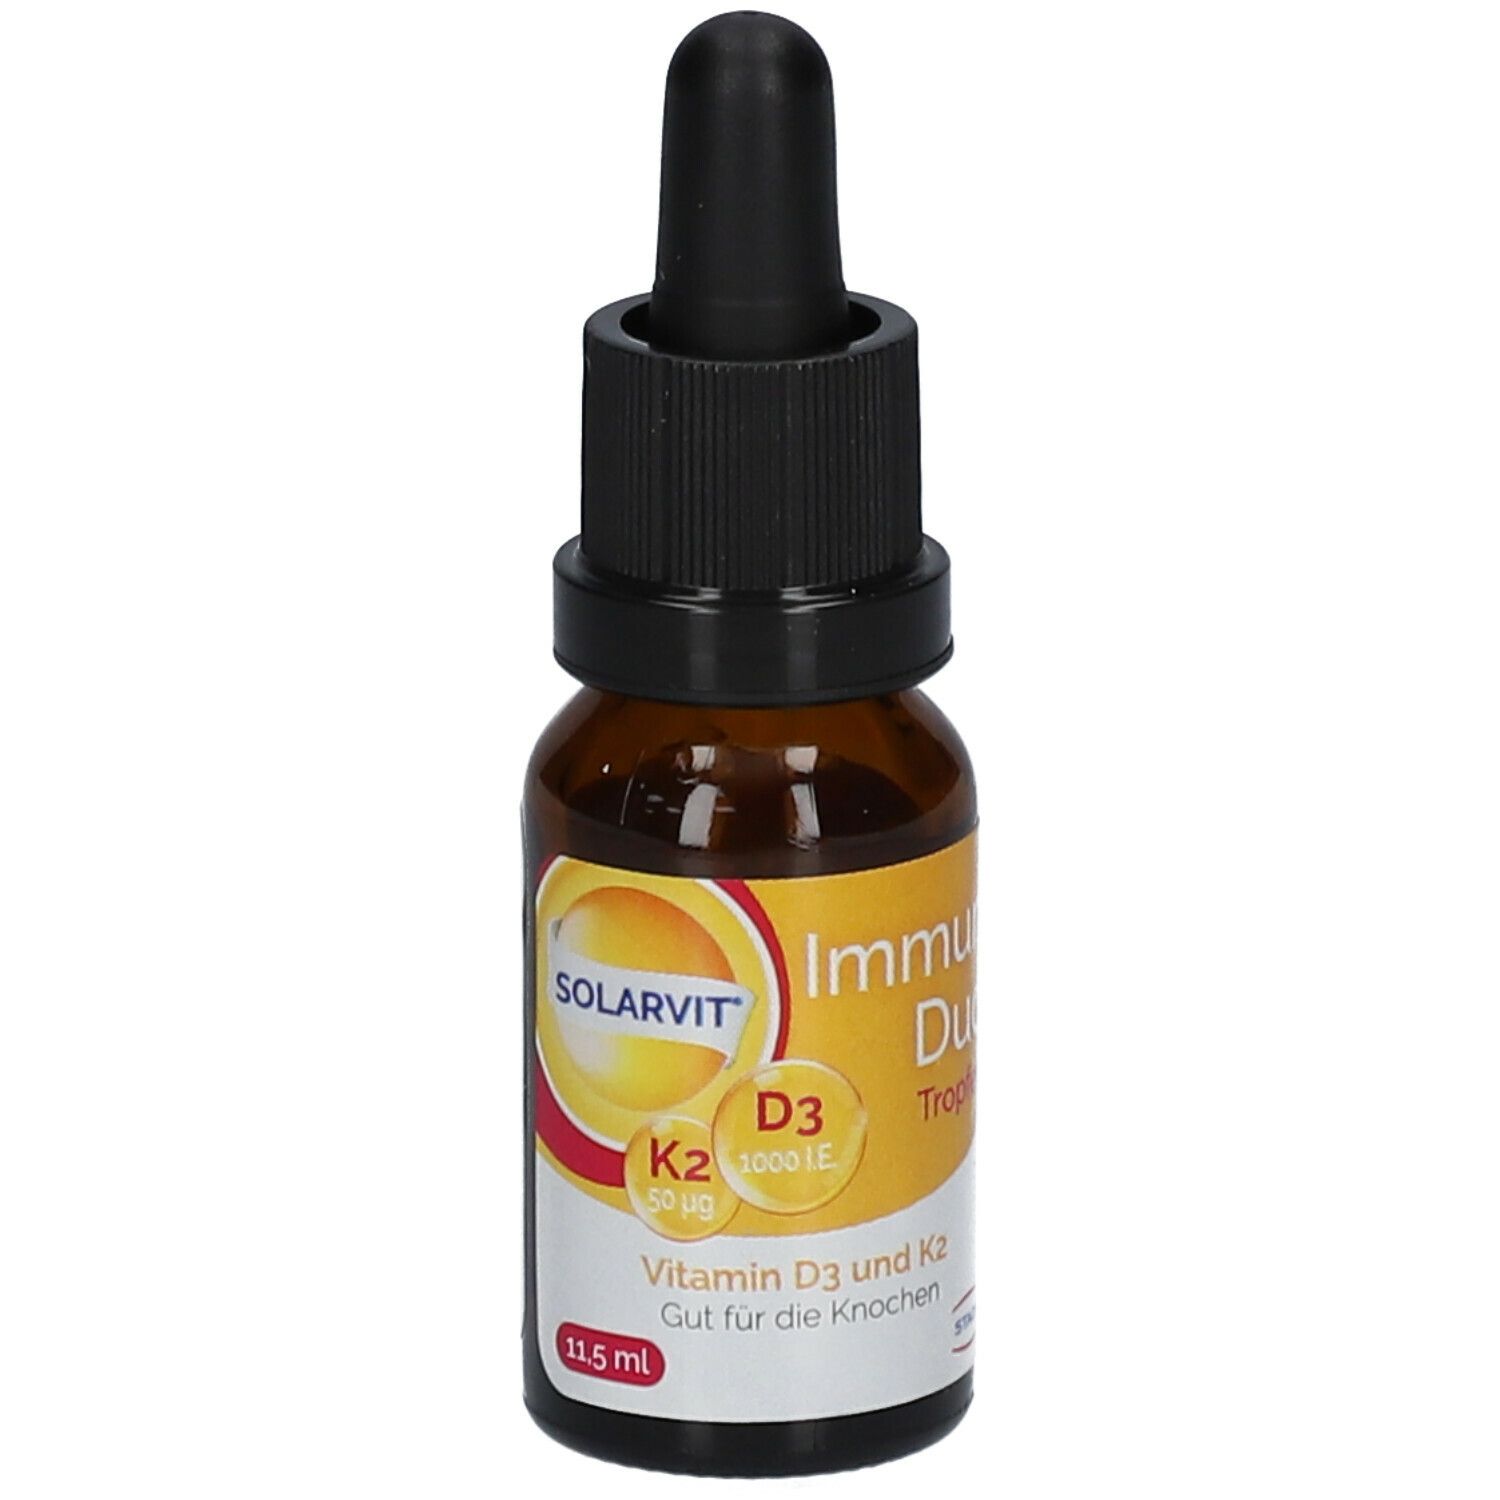 Solarvit® Immun Duo Tropfen mit Vitamin D3 & Vitamin K2, individuelle Dosierung